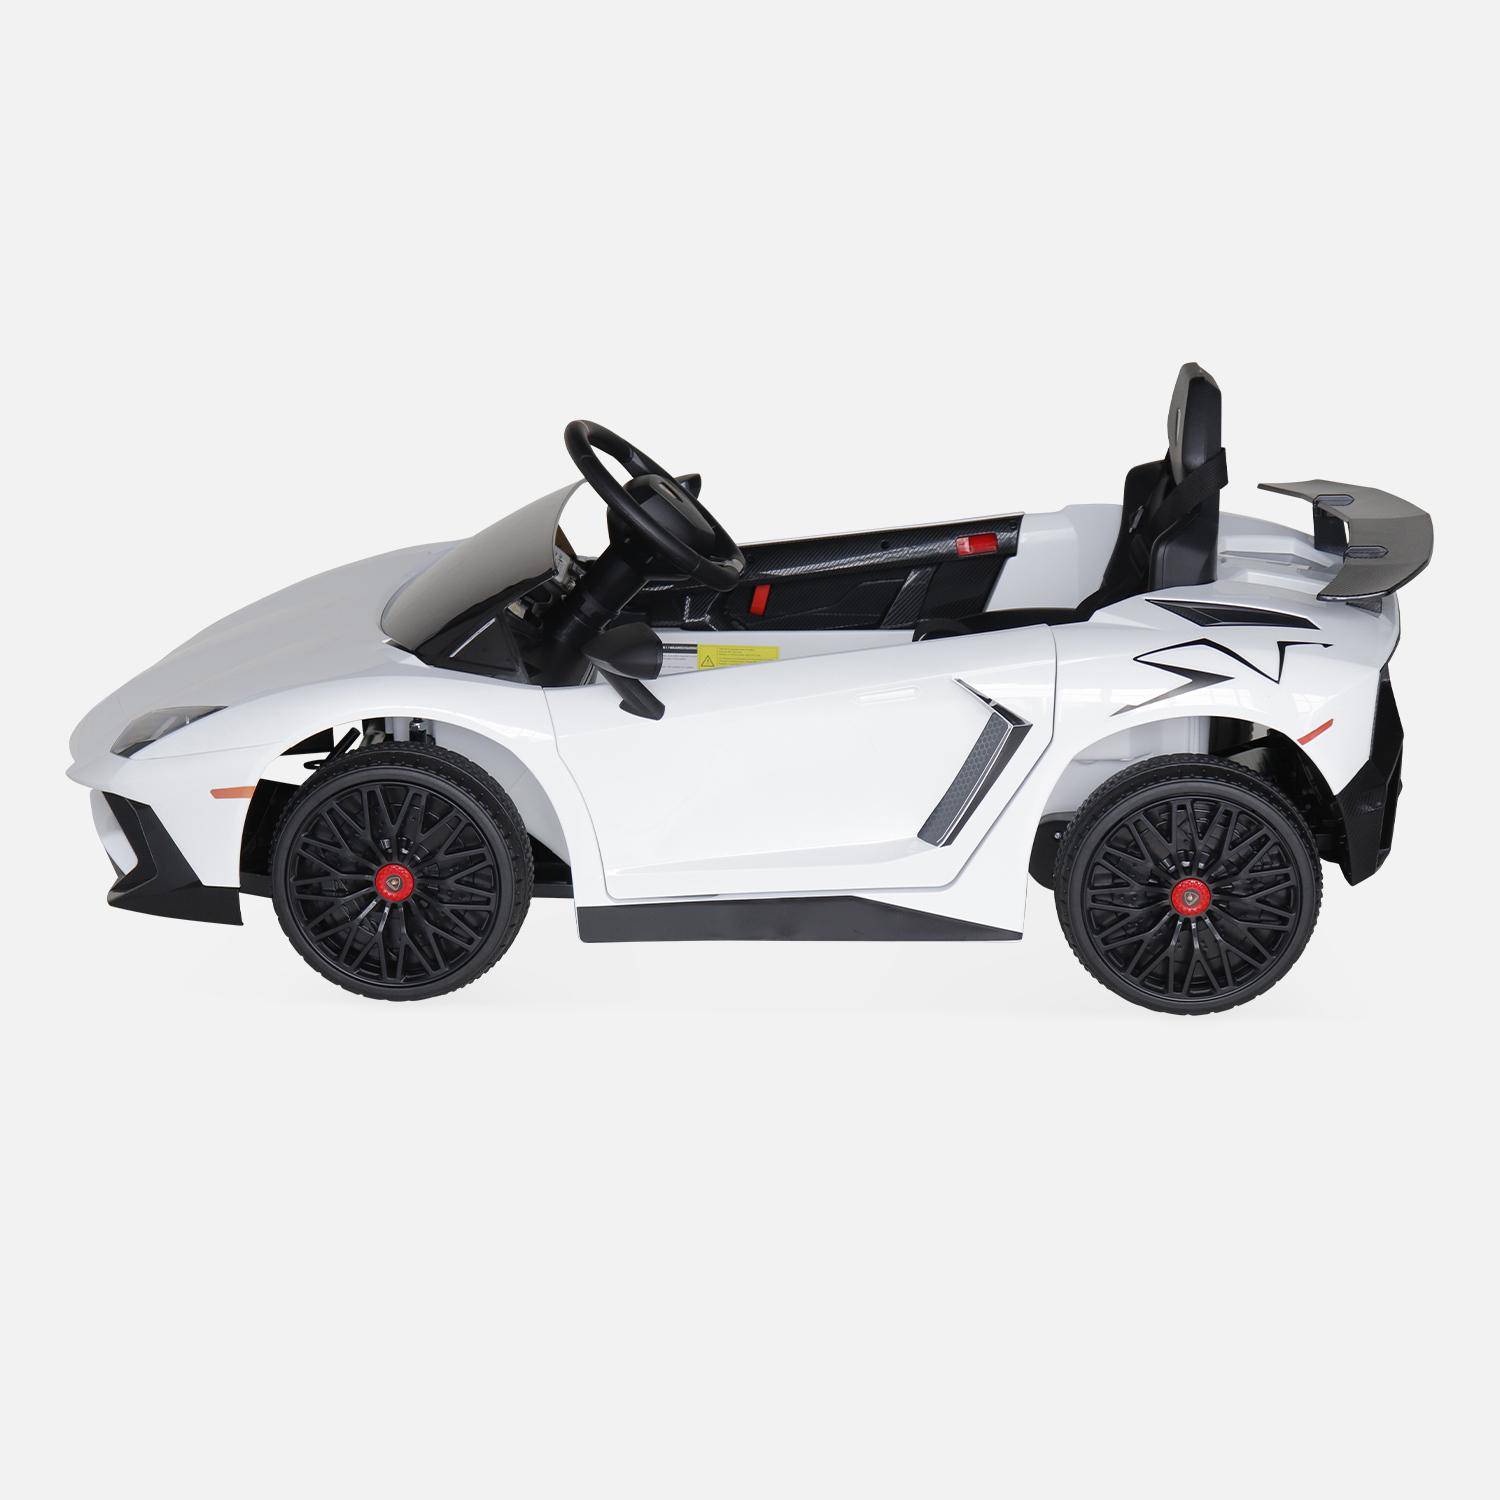 12V Lamborghini elektrische kinderauto, wit, 1 zitplaats, met radio, afstandsbediening, MP3, USB-poort en functionele koplampen Photo5